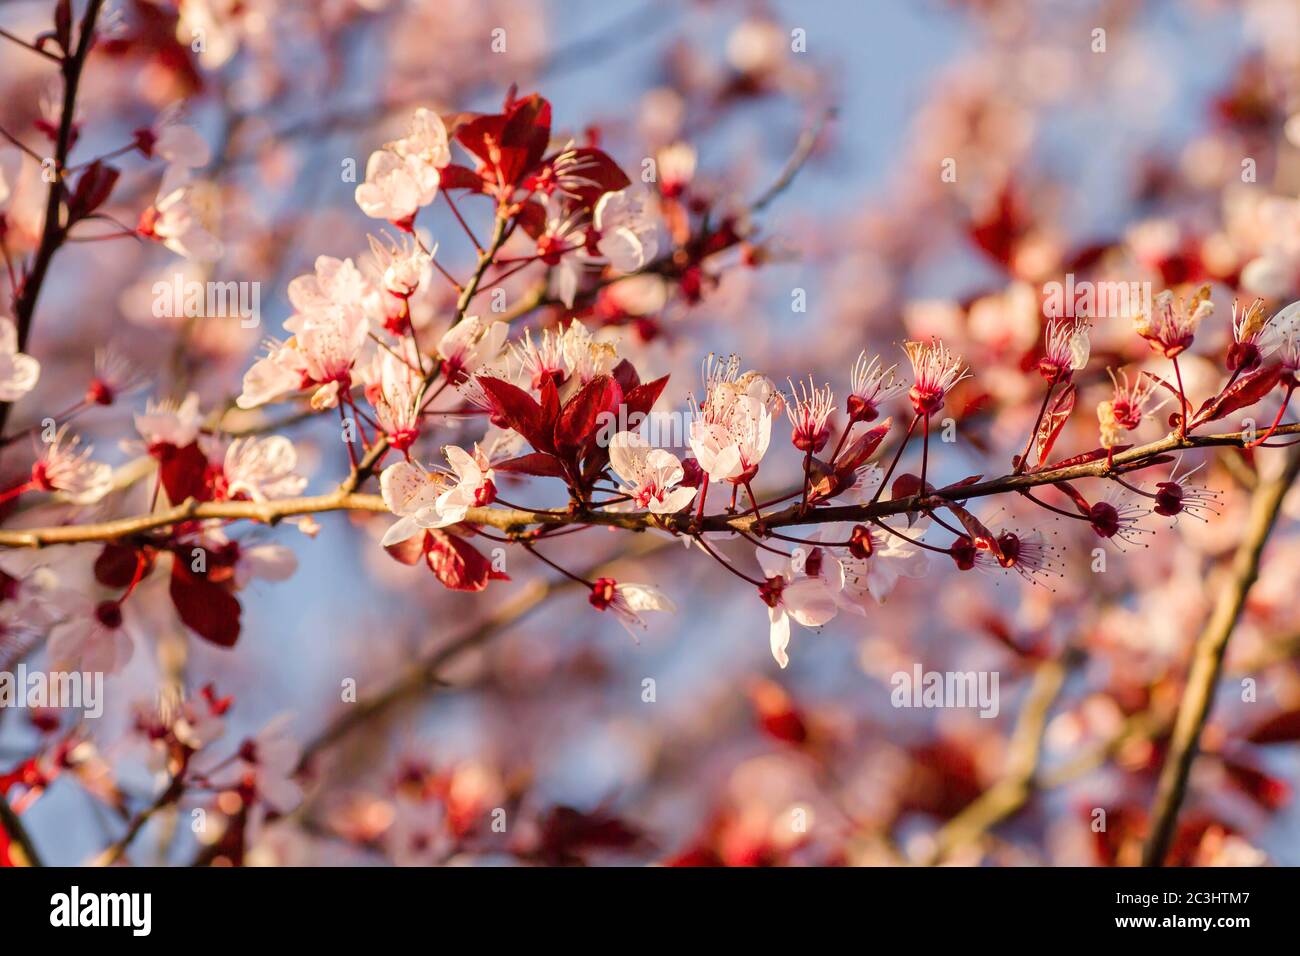 Detail of prunus cerasifera or black cherry plum blooming in early spring Stock Photo